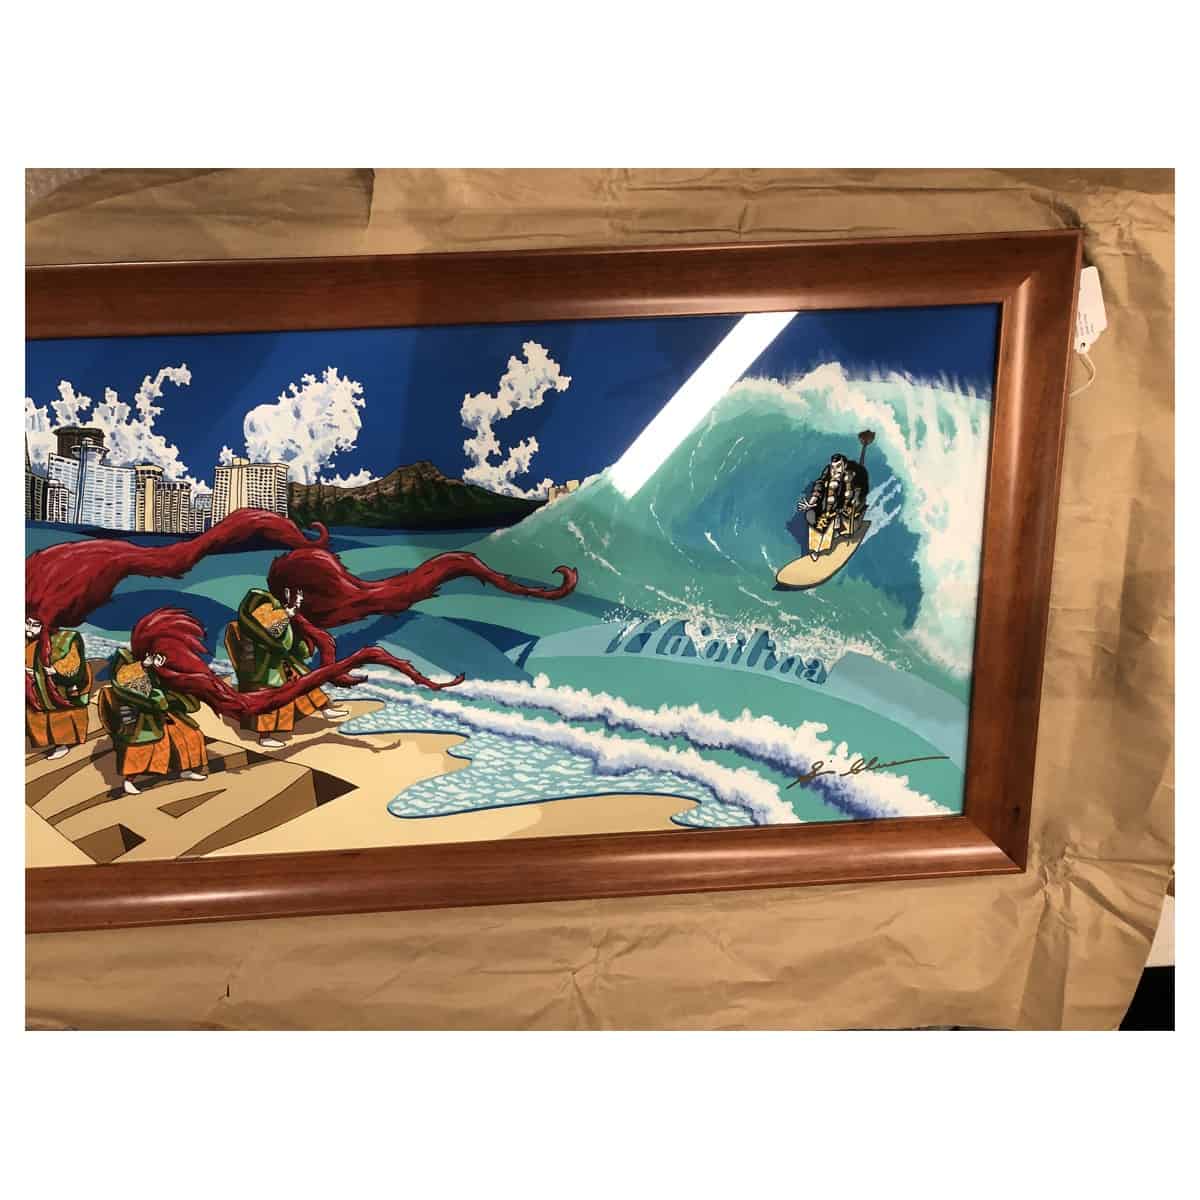 shin saori kato renjishi in waikiki hawaii art frame